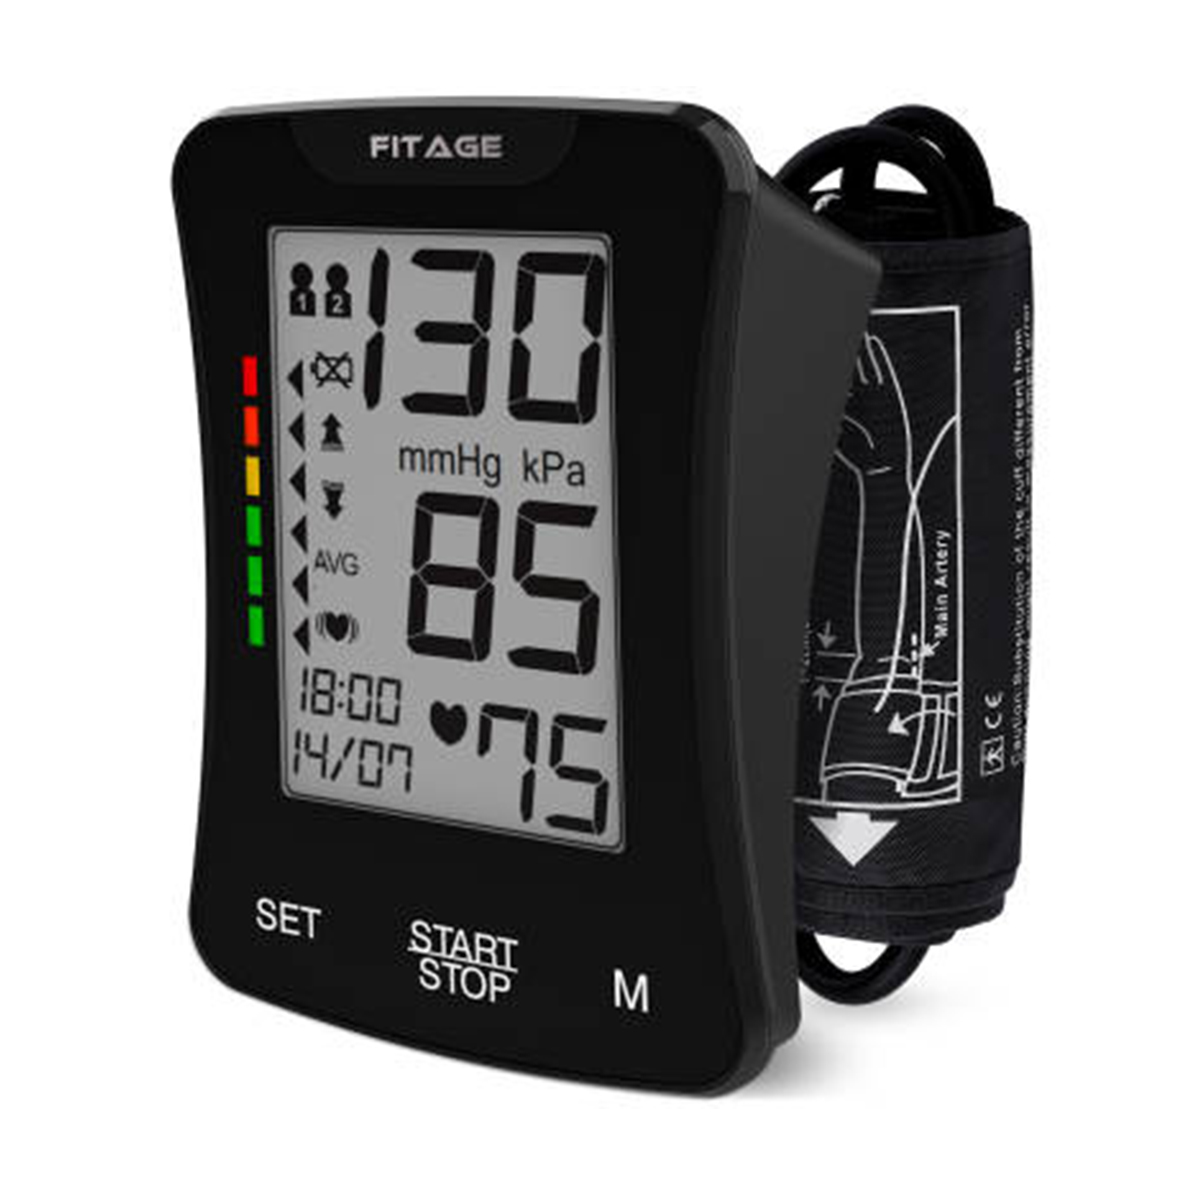 Mofuta oa Arm Fully Automatic Digital Blood Pressure Monitor ka ho Bua